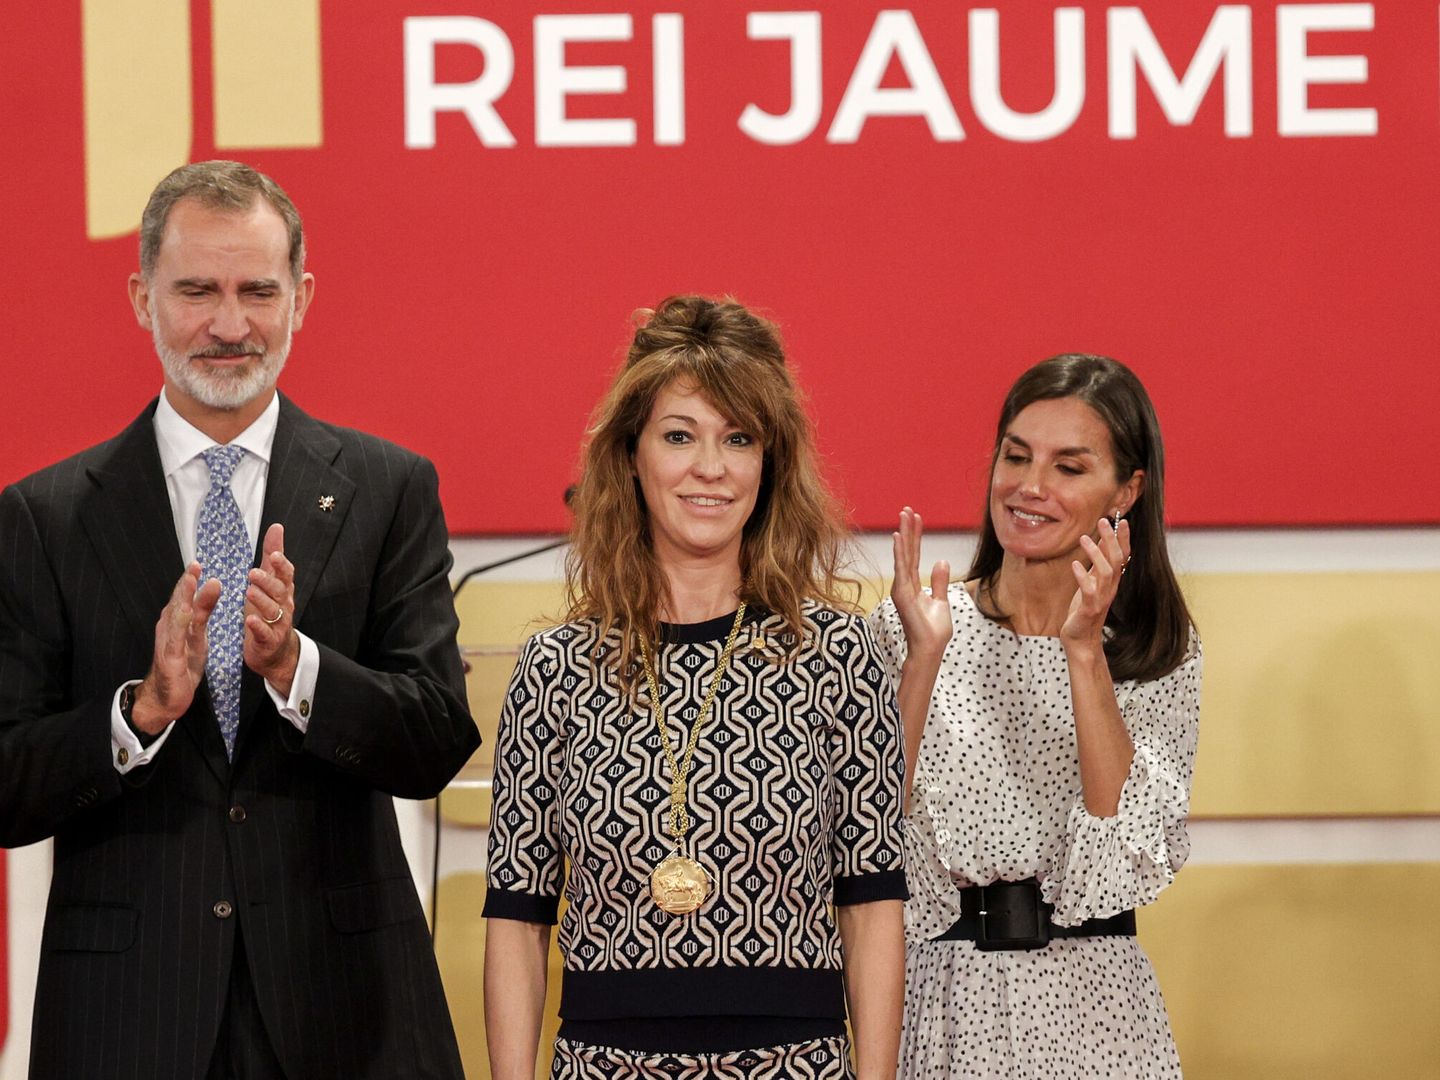 Los Reyes junto a Marta Reynal-Querol, Premio Jaume I Economía. (EFE)